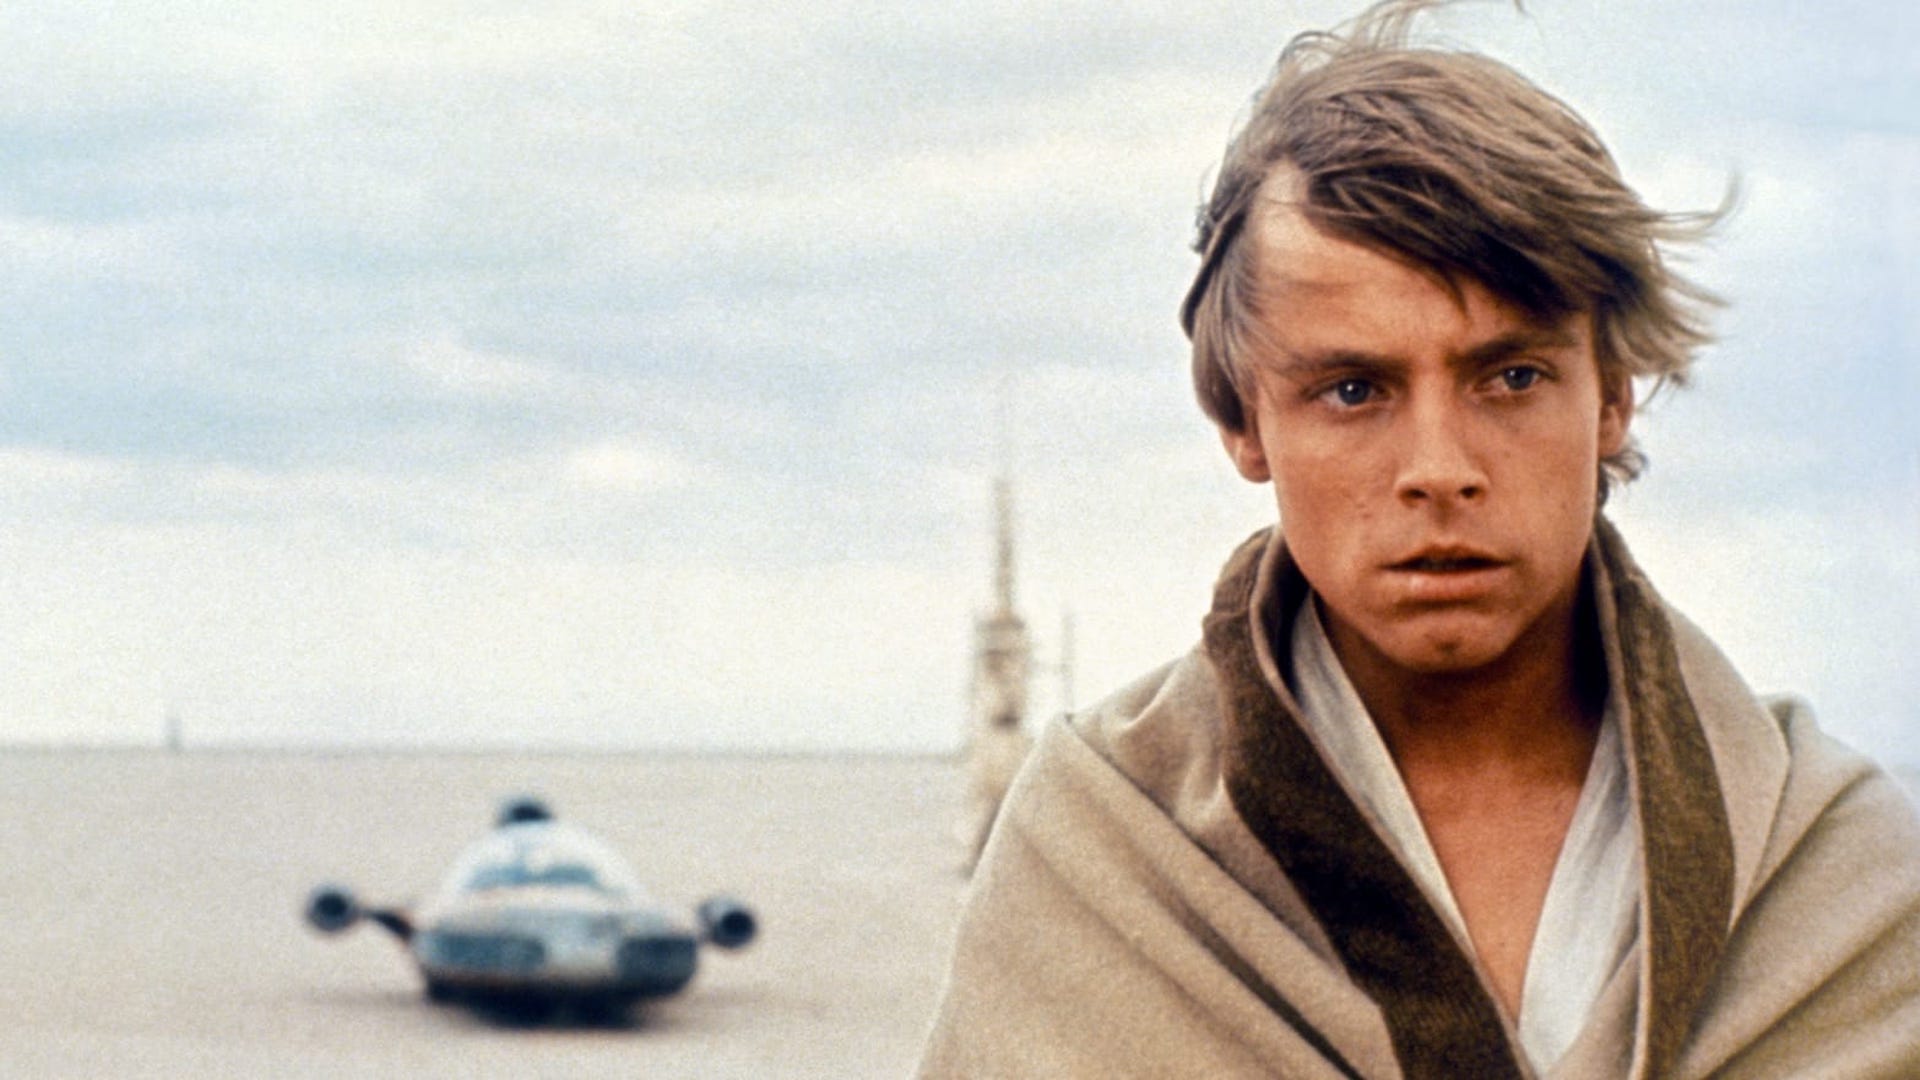 Luke Skywalker in A New Hope